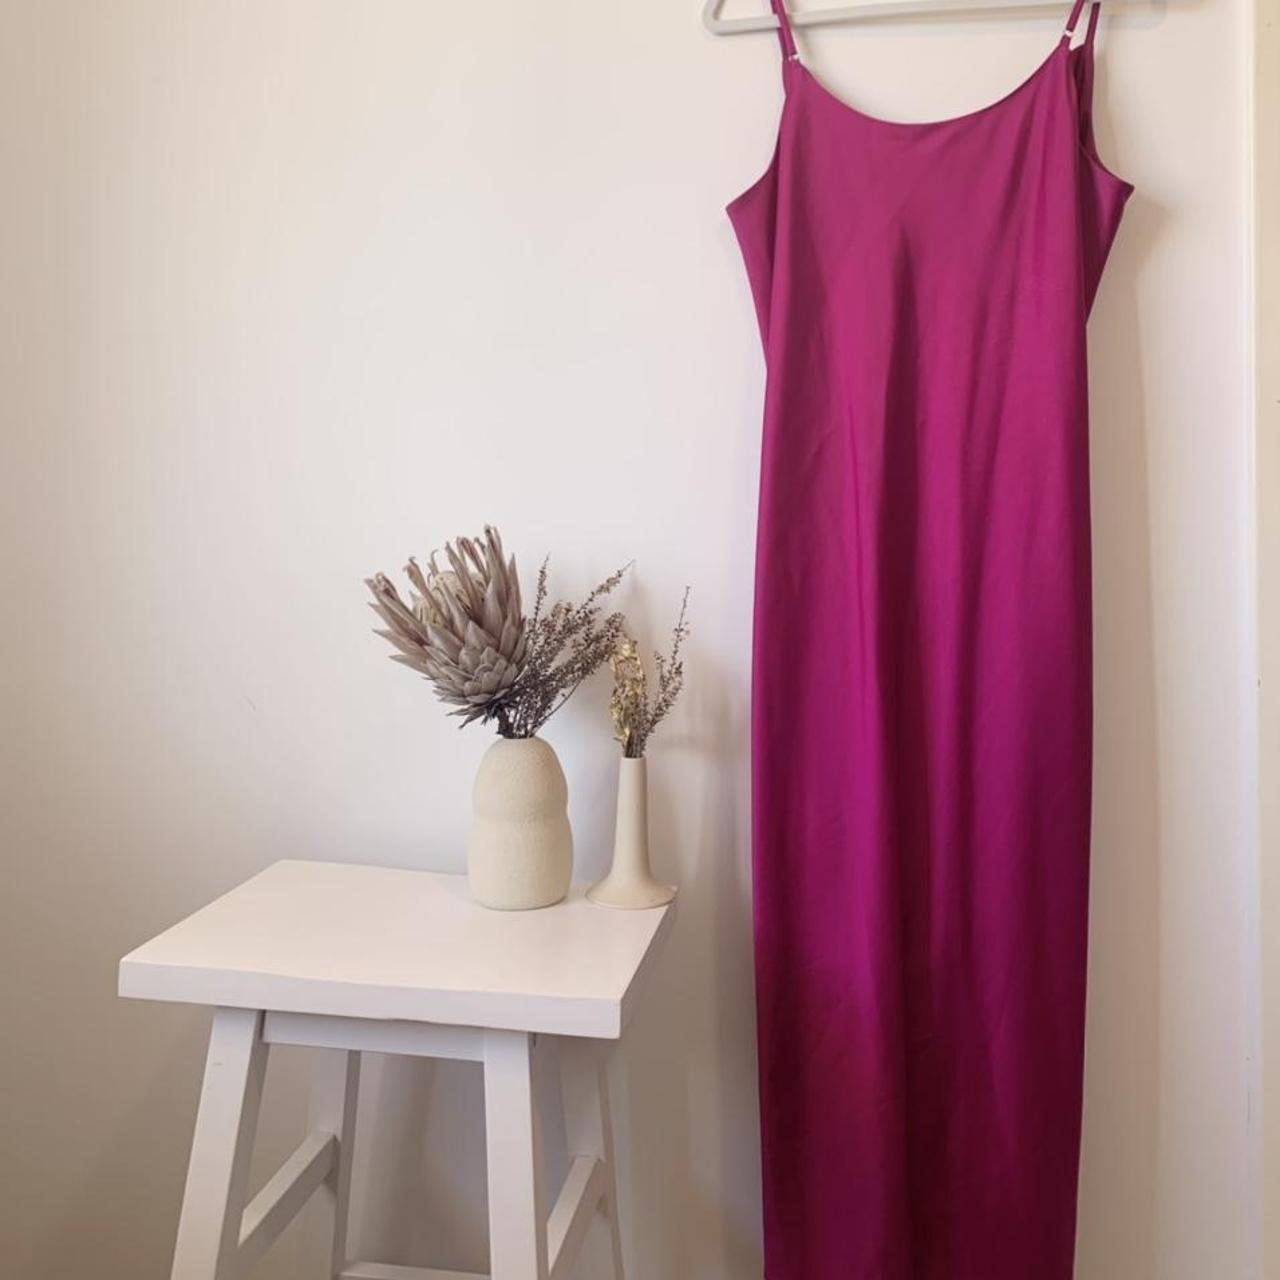 Beautiful Pink Silky Slip Dress 💓by... - Depop